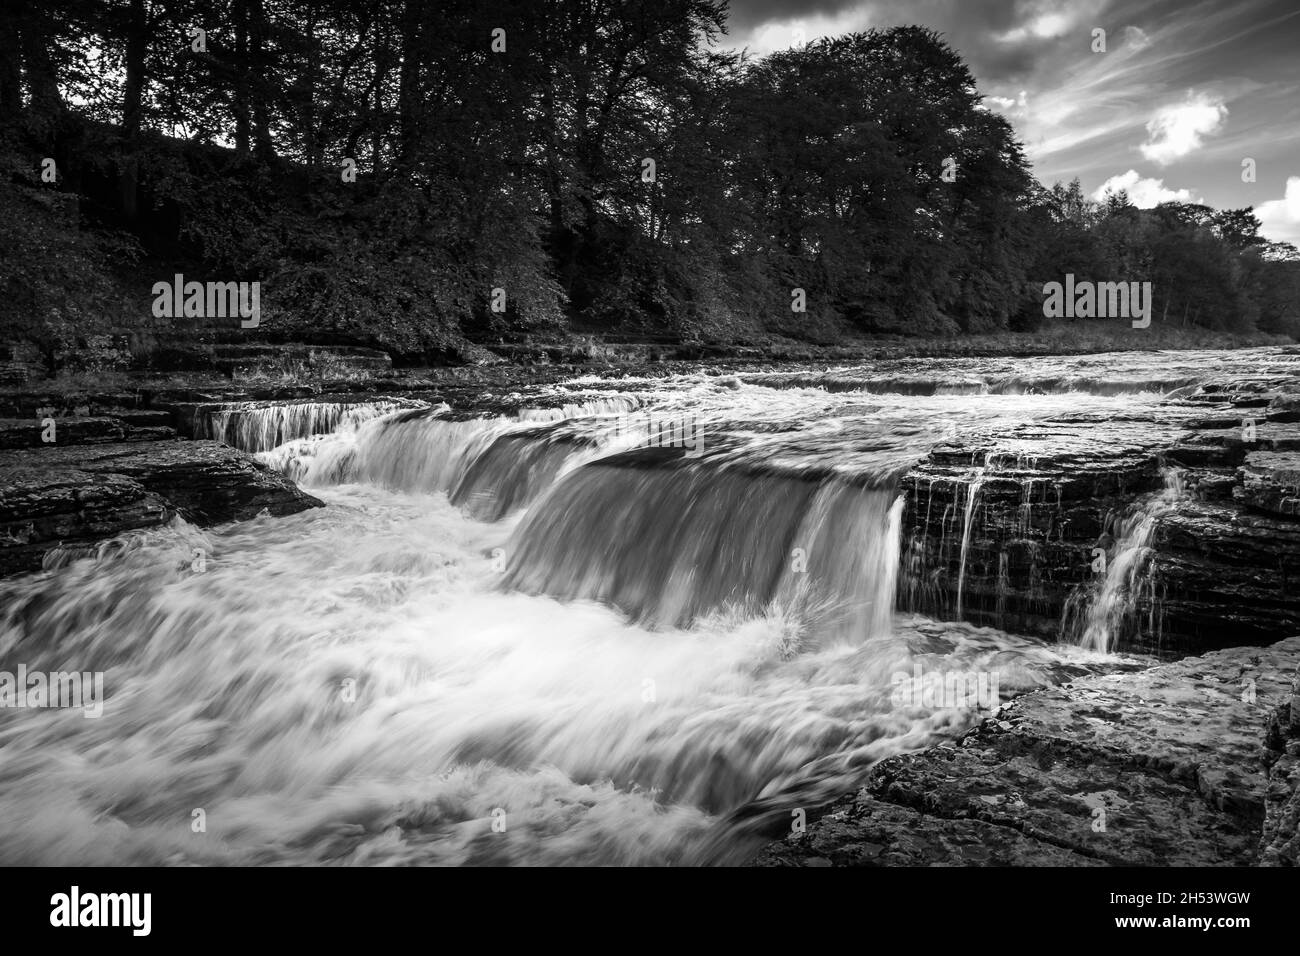 Image en noir et blanc d'une partie des chutes d'Aysgarth à Wensleydale, dans le Yorkshire.Montrant la rivière Ure qui coule sur de nombreuses chutes d'eau.Personne. Banque D'Images